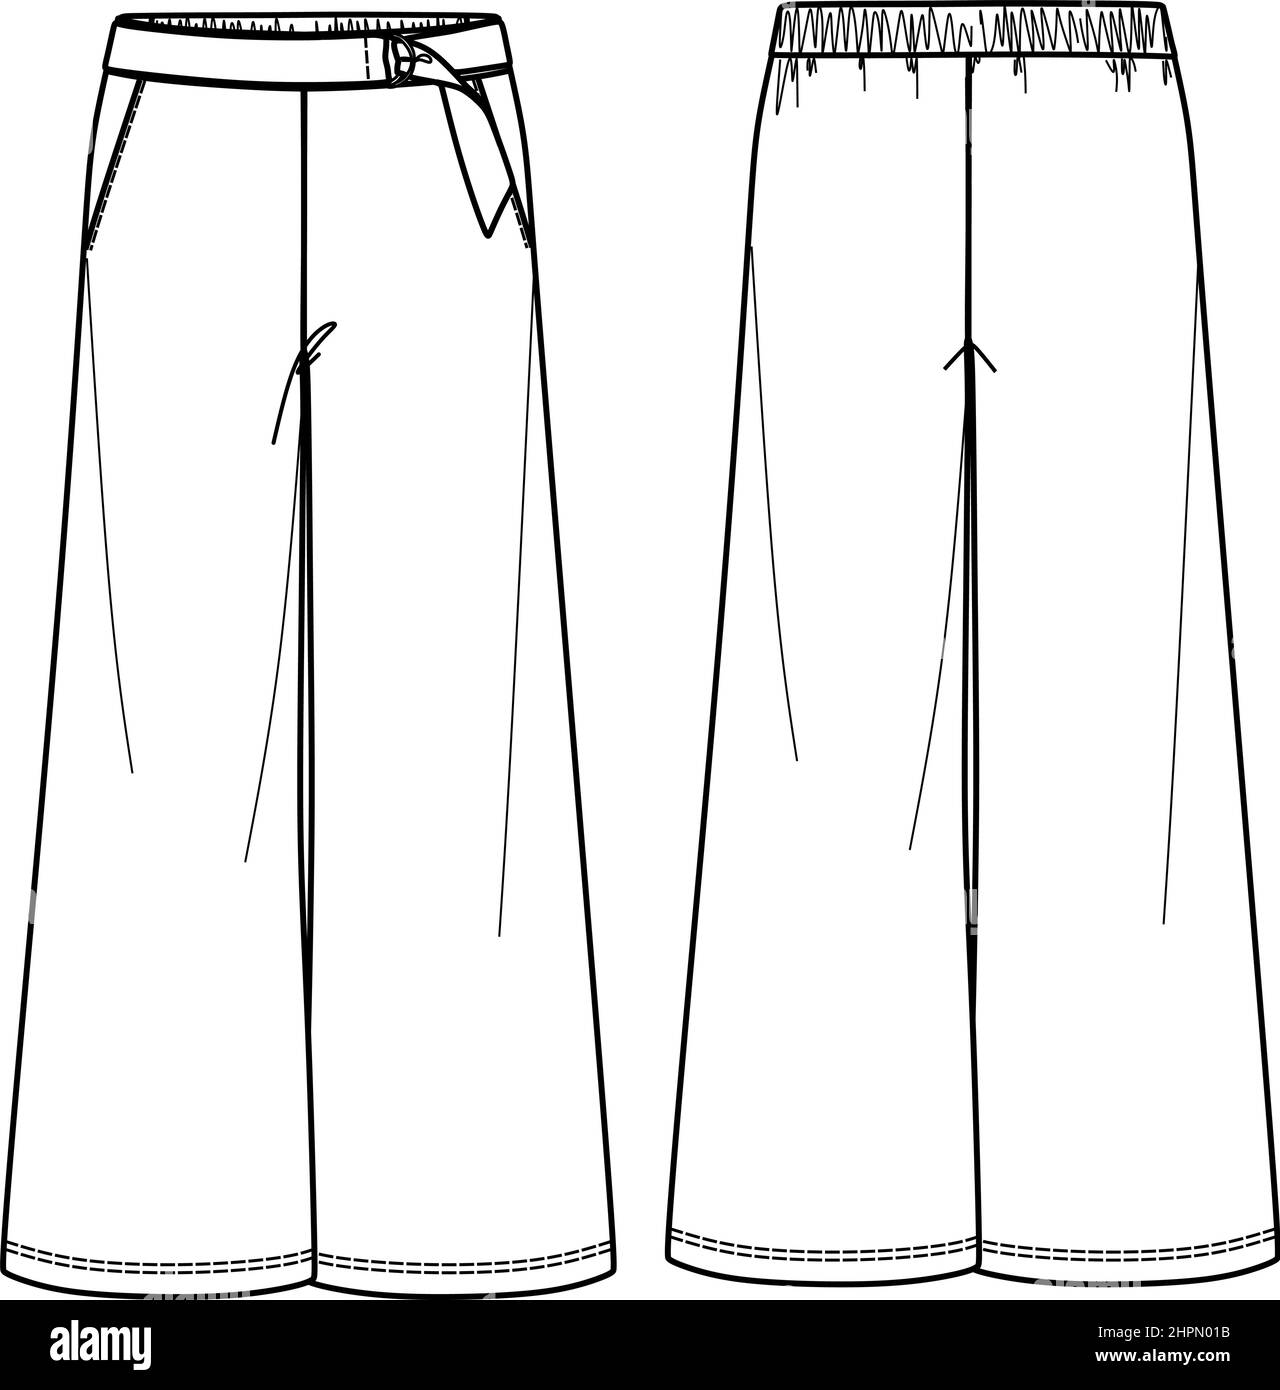 Pantalon Vector coupe large mode CAD, femme décontracté pantalon avec ceinture dessin technique, croquis, modèle, plat. Pantalon en jersey ou tissu tissé avec Illustration de Vecteur